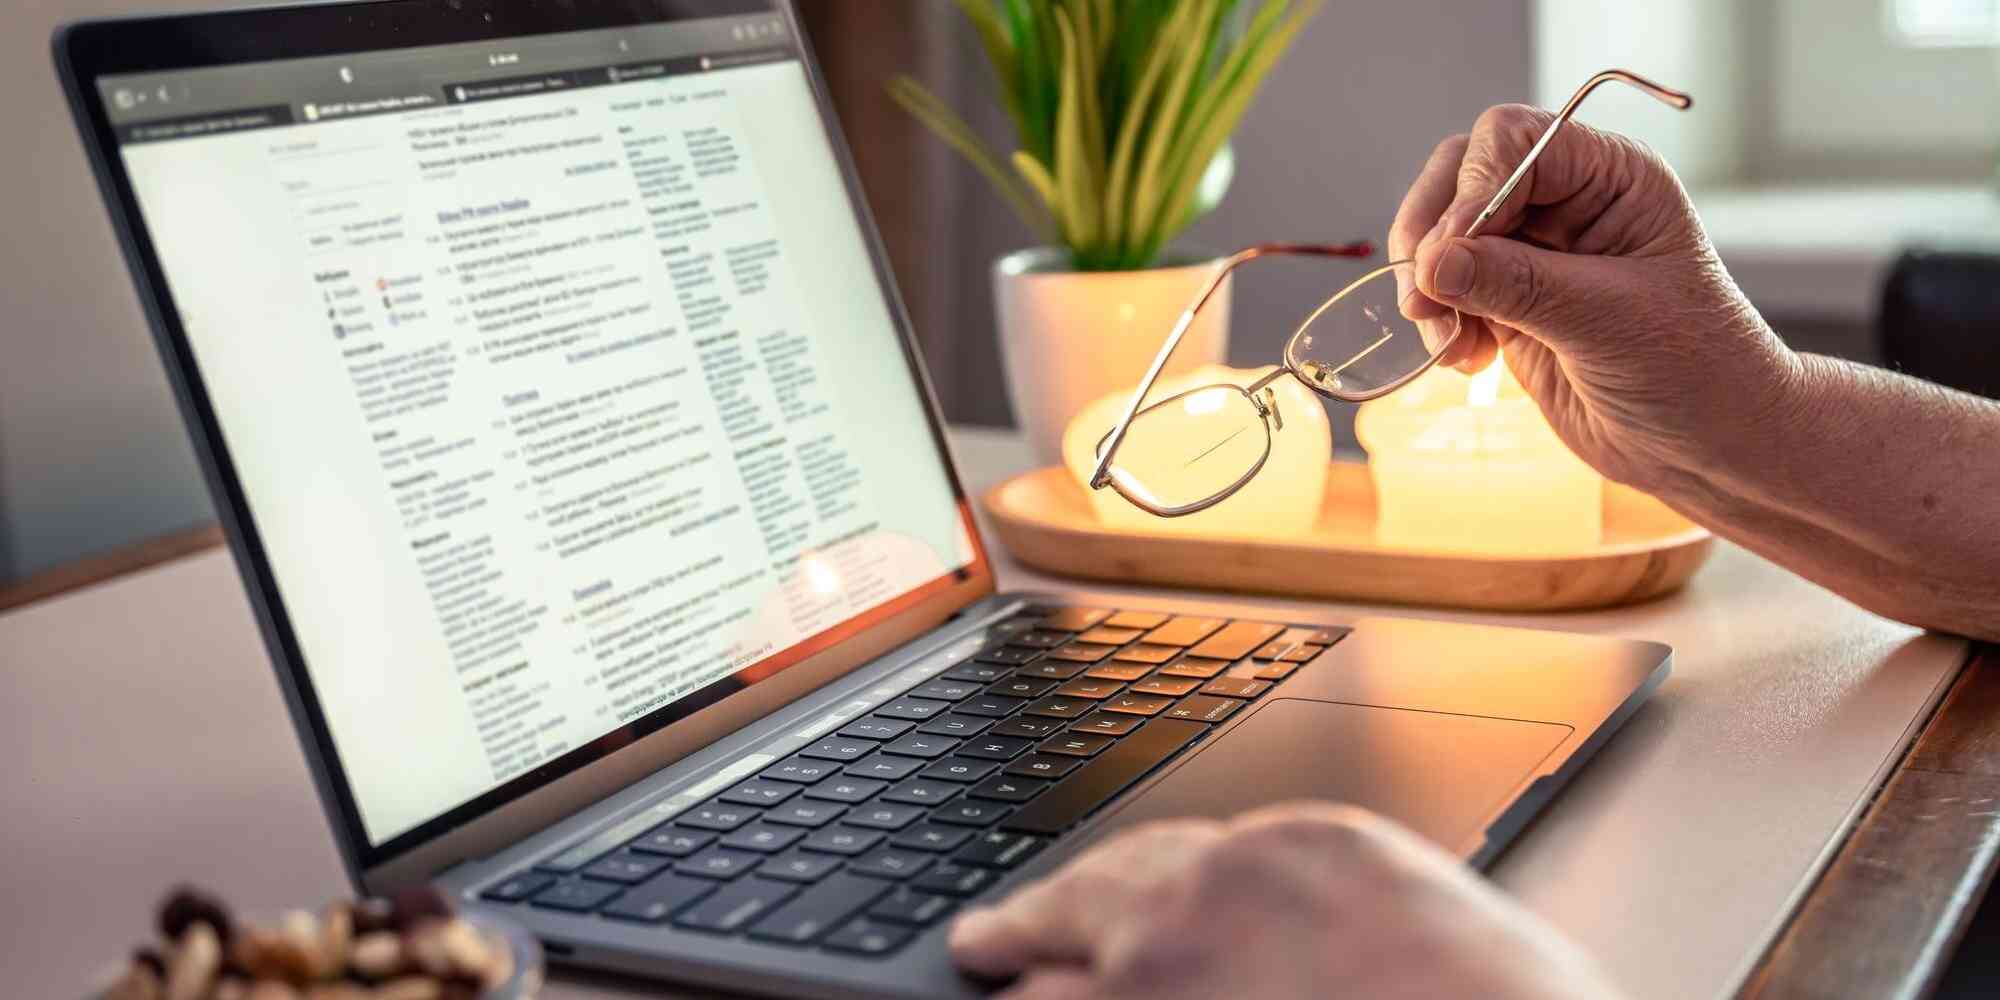 图中是一名男子手持着眼镜，正在使用笔记本电脑，电脑屏幕显示的是文件内容。